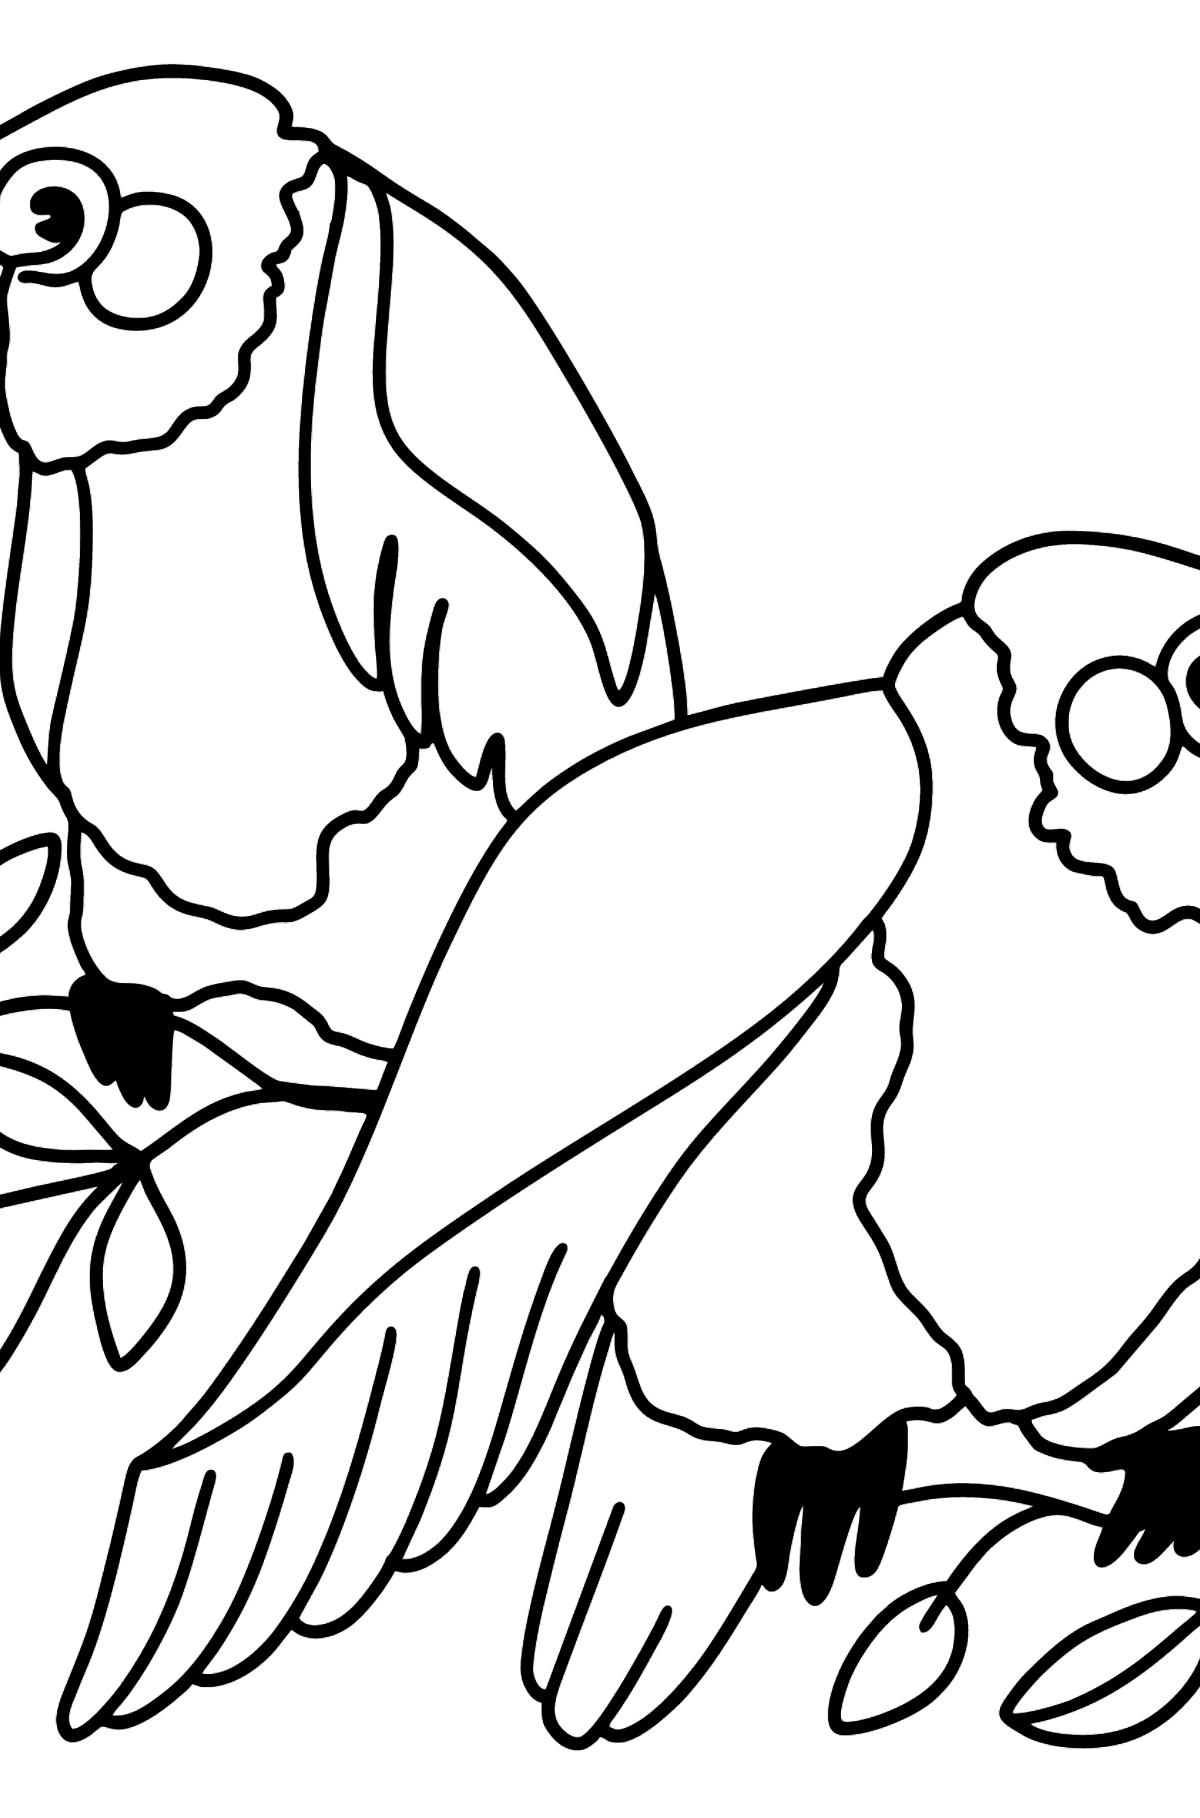 Desenho para colorir de dois papagaios - Imagens para Colorir para Crianças